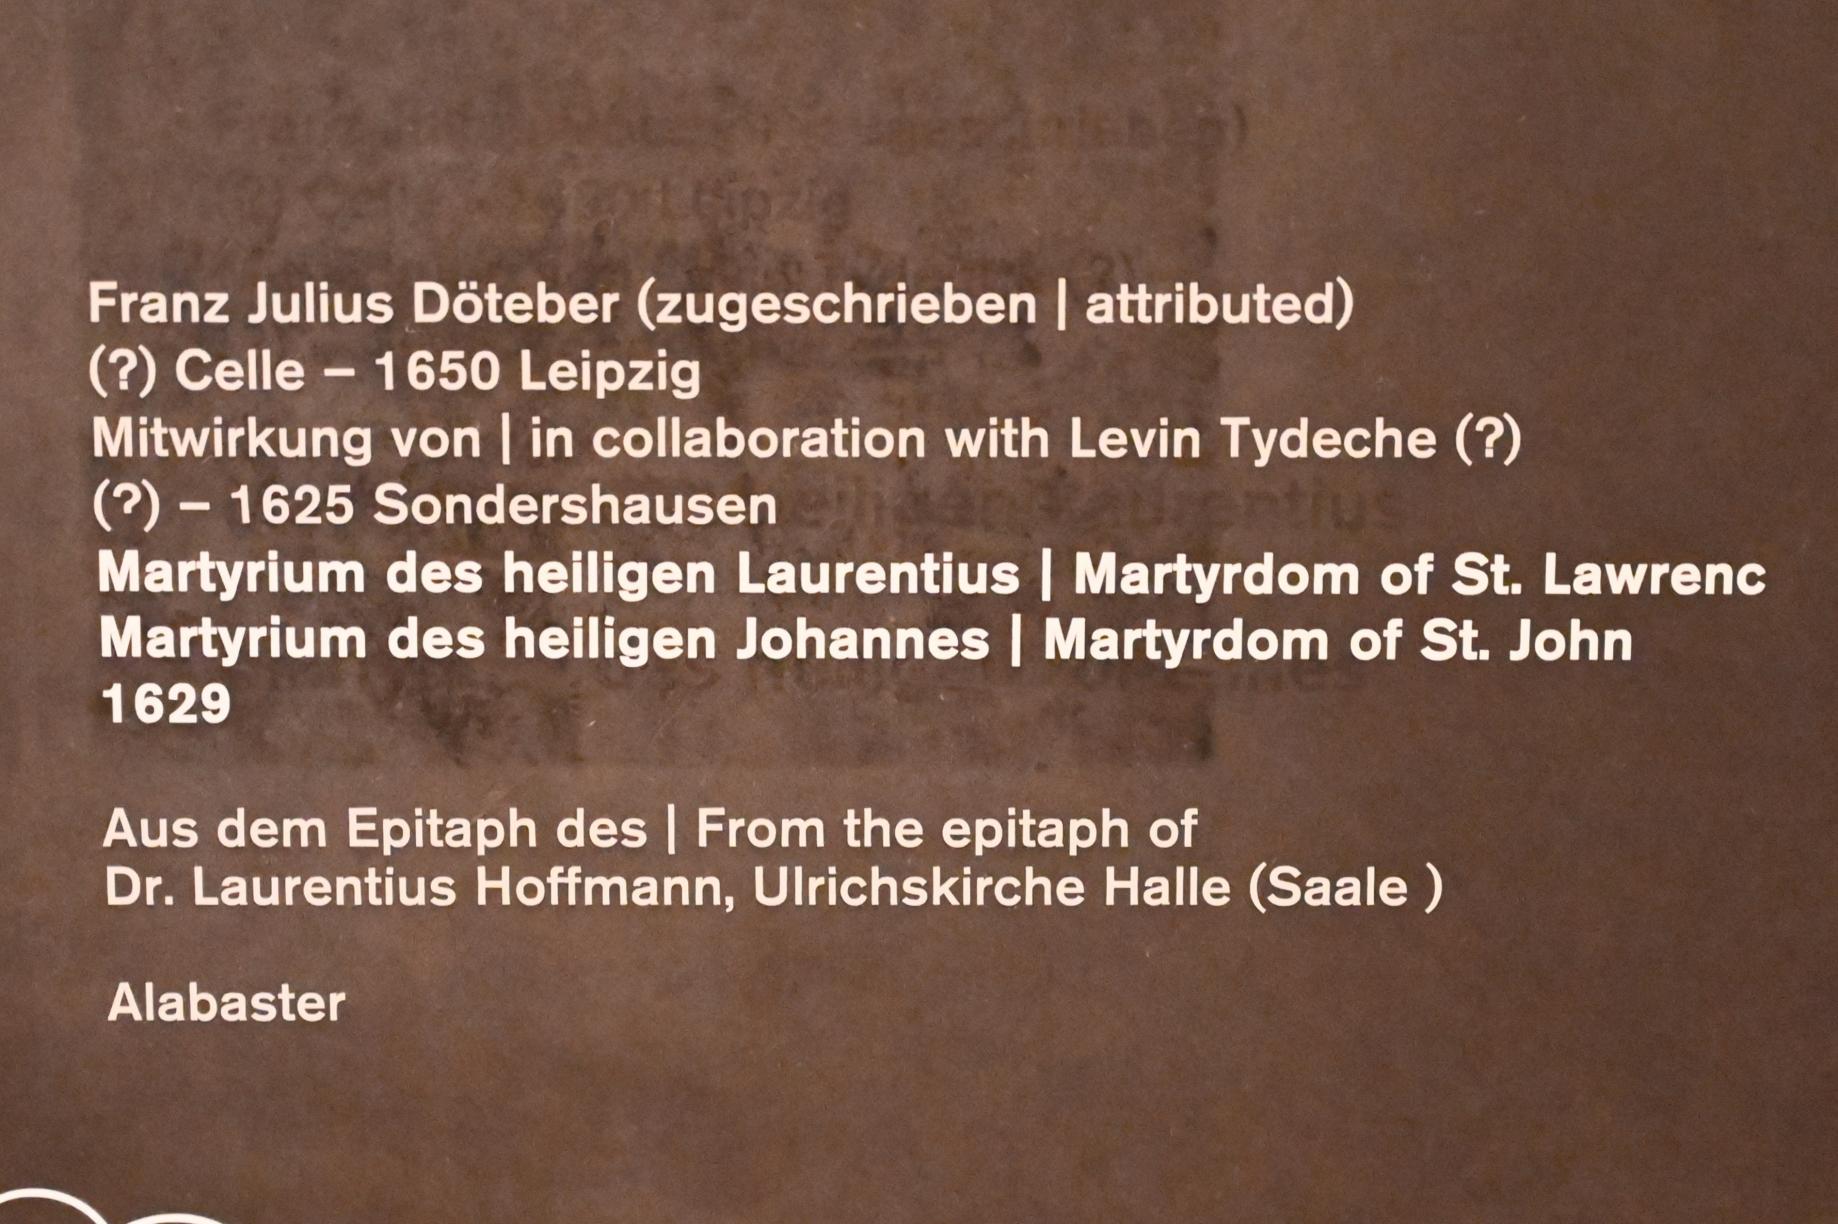 Franz Julius Döteber (1629), Martyrium des heiligen Johannes, Halle (Saale), Kirche St. Ulrich, jetzt Halle (Saale), Kunstmuseum Moritzburg, Mittelalter Saal 1, 1629, Bild 2/2